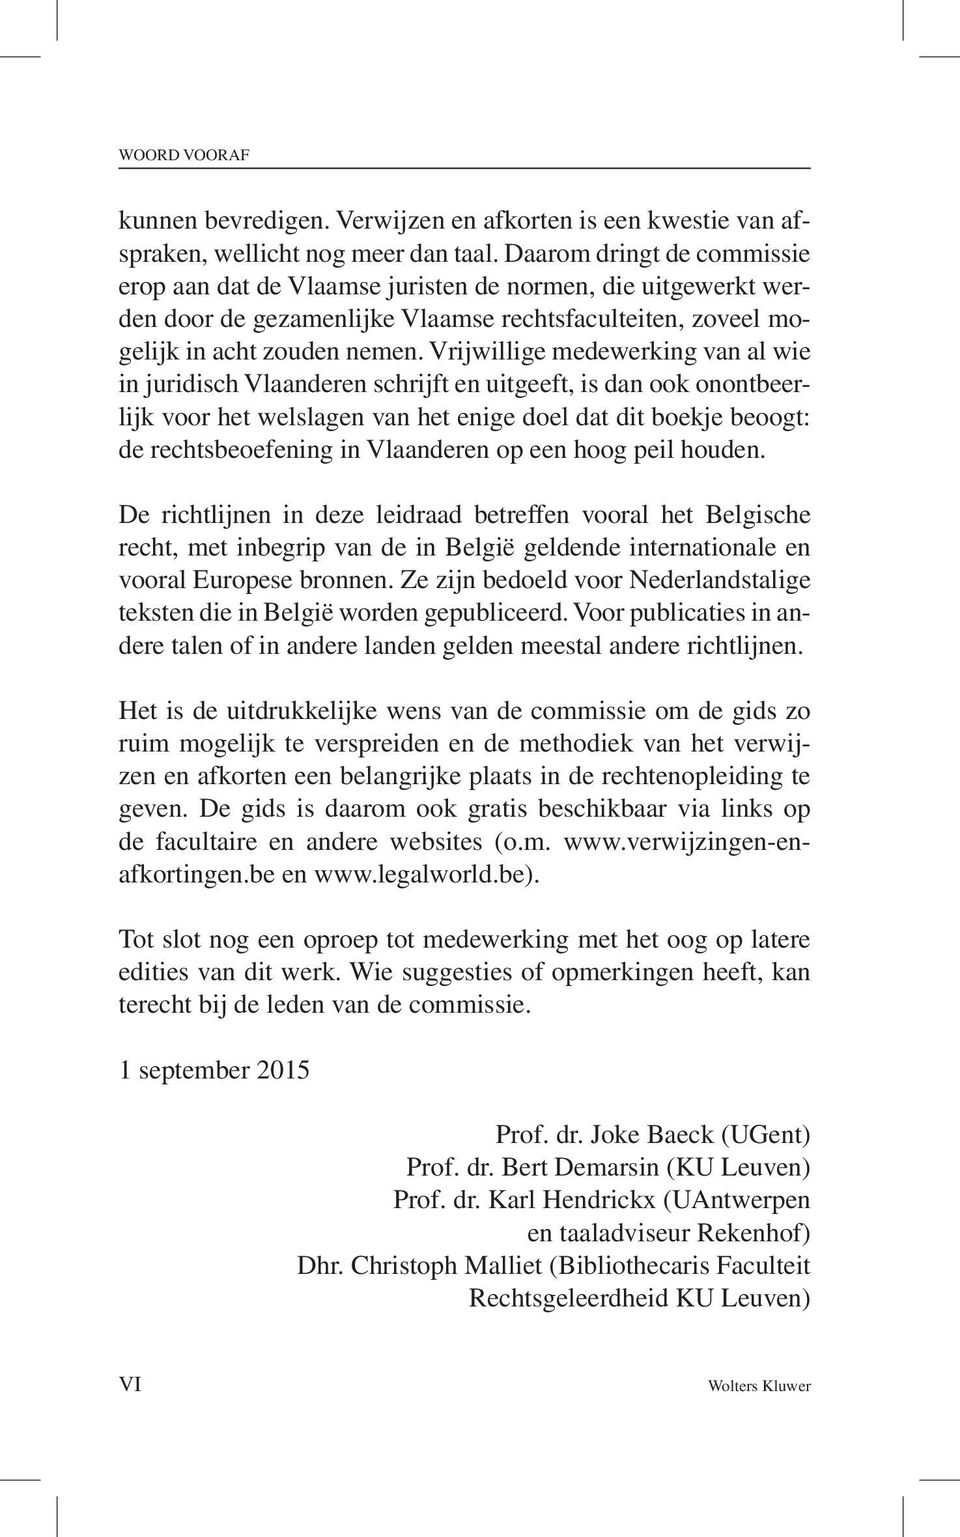 Vrijwillige medewerking van al wie in juridisch Vlaanderen schrijft en uitgeeft, is dan ook onontbeerlijk voor het welslagen van het enige doel dat dit boekje beoogt: de rechtsbeoefening in